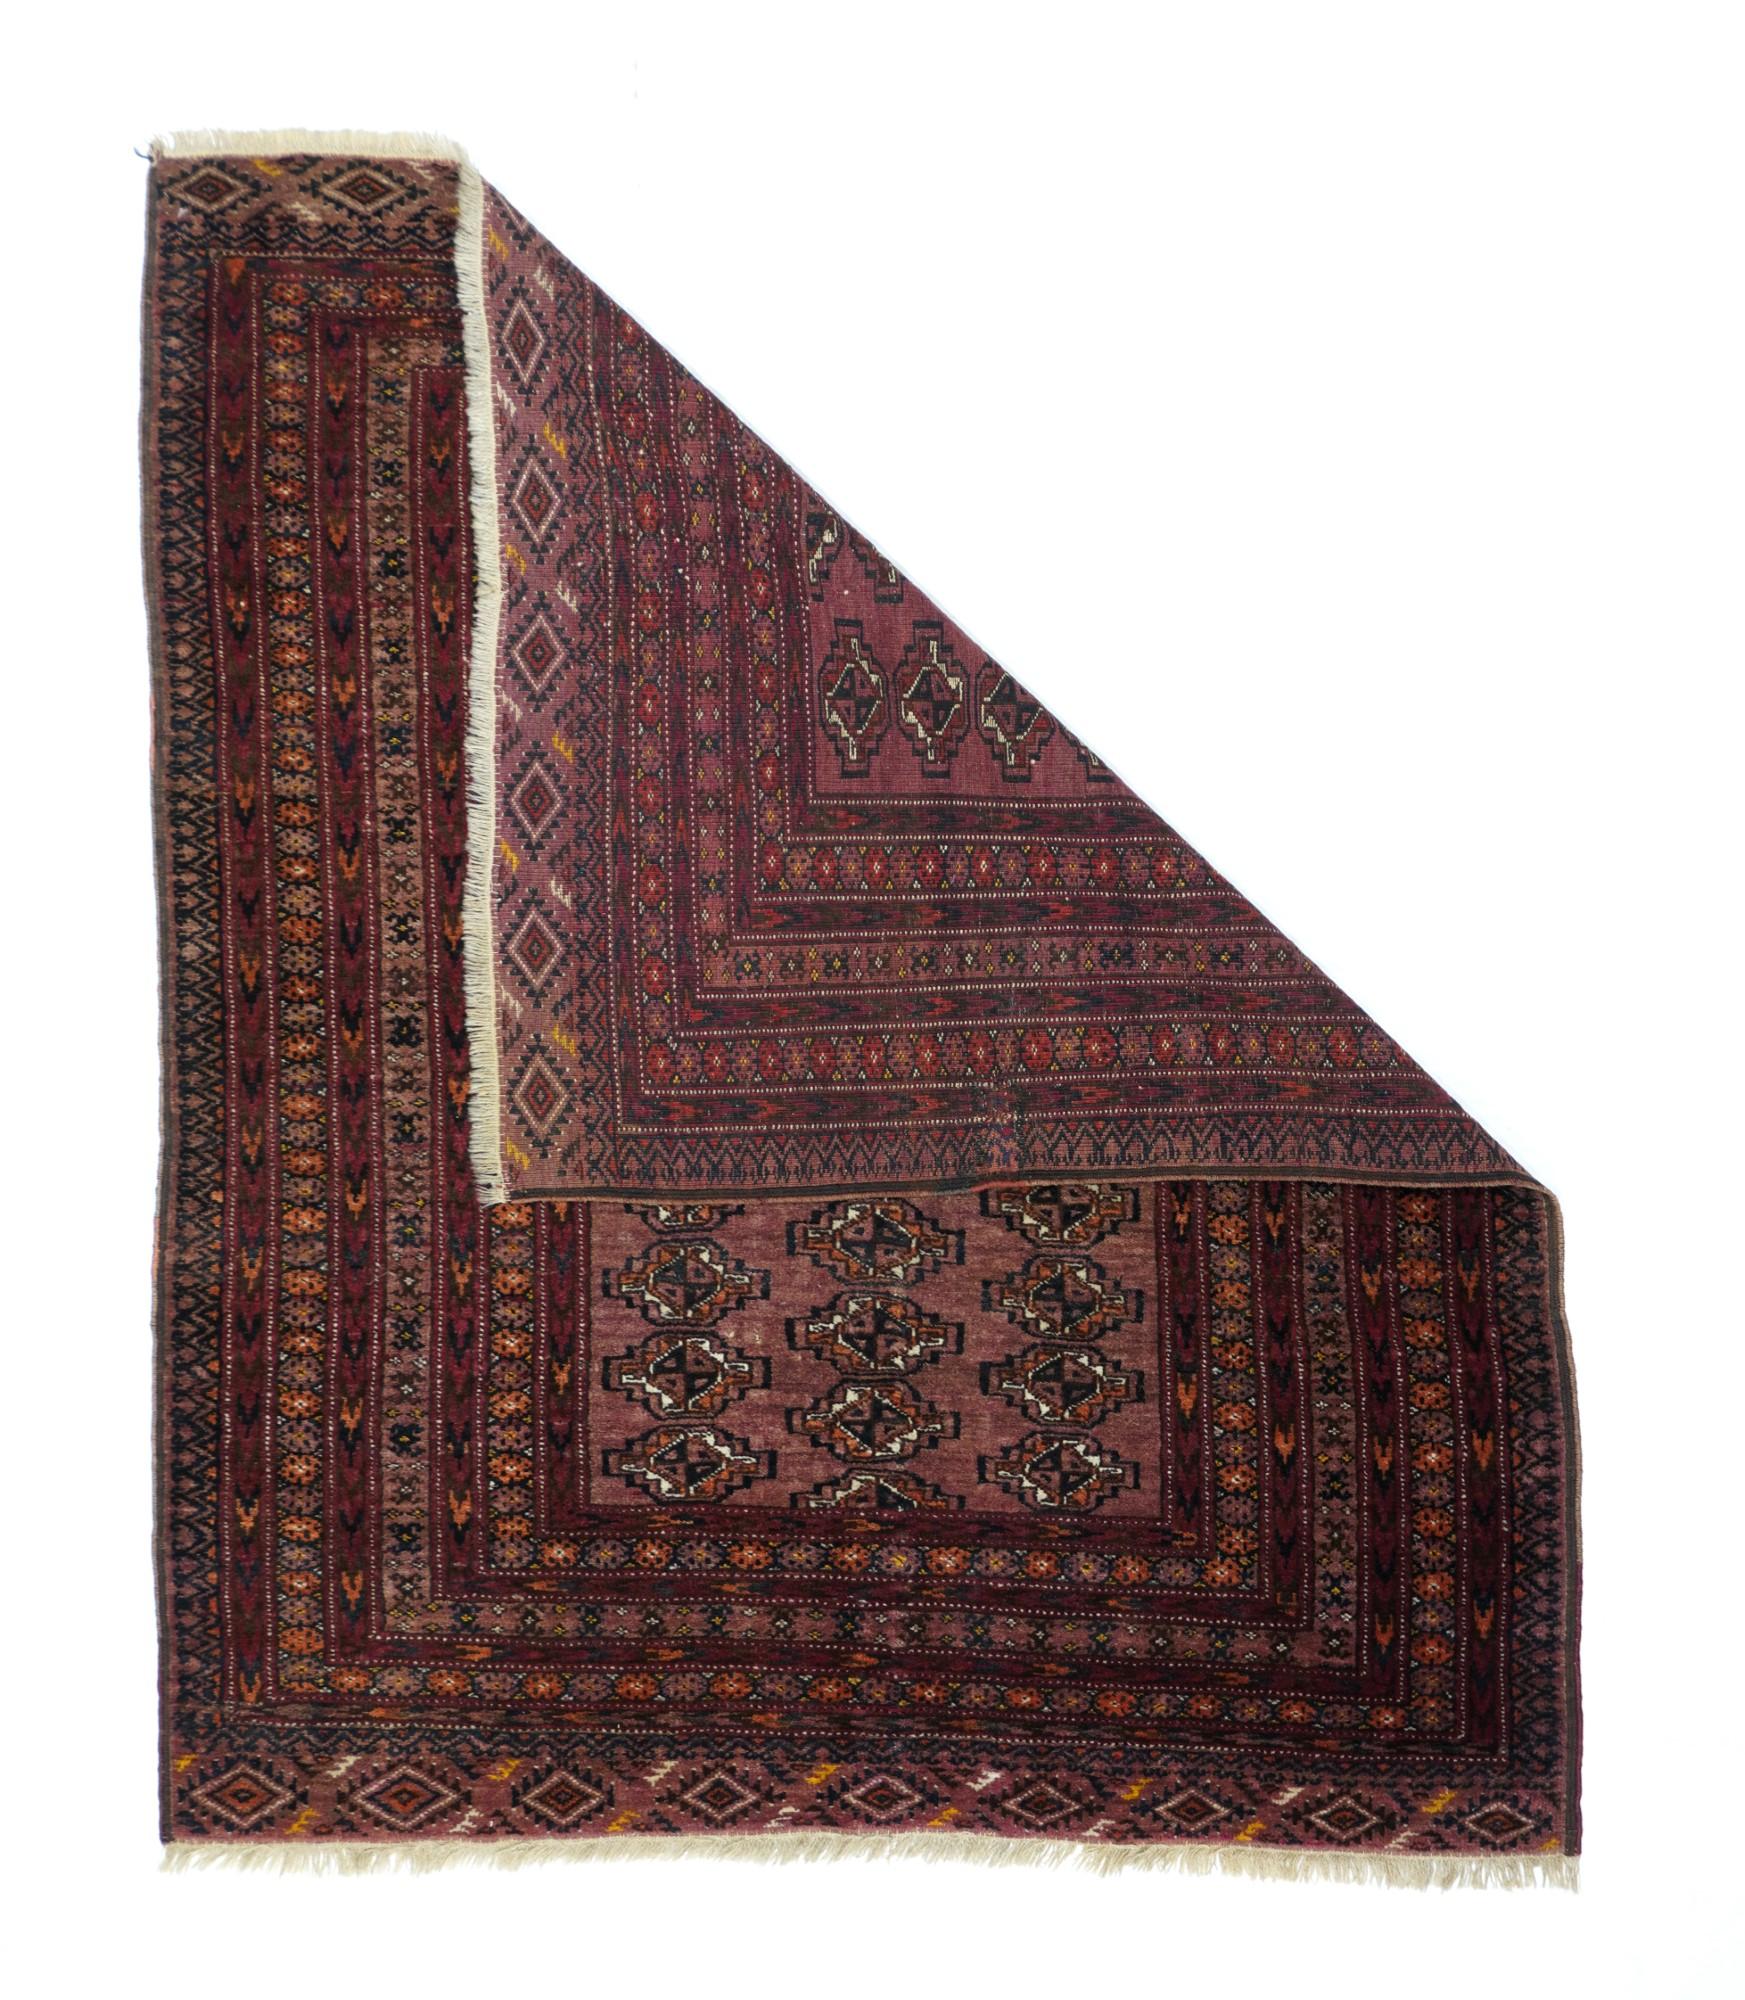 Vintage Bokhara-Teppich misst 3'11'' x 4'9''. Diese nomadische Streuung aus Wolle zeigt ein kleines rotes Feld mit drei versetzten Säulen aus abgeflachten, geviertelten Guls, mit einem System aus acht gemusterten Bordüren, darunter vier mit